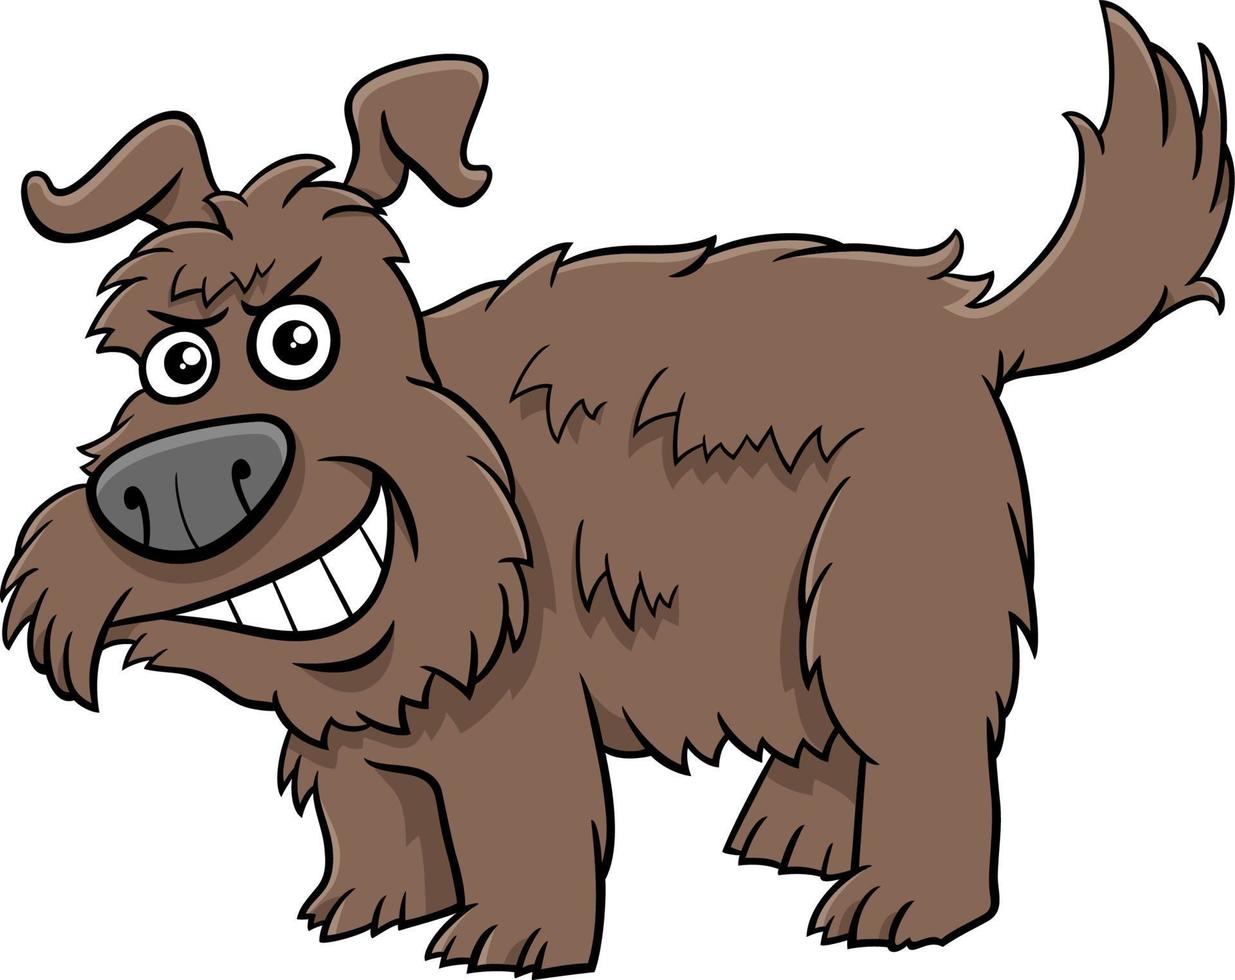 lustiger zotteliger brauner hund der comic-tierfigur der karikatur vektor